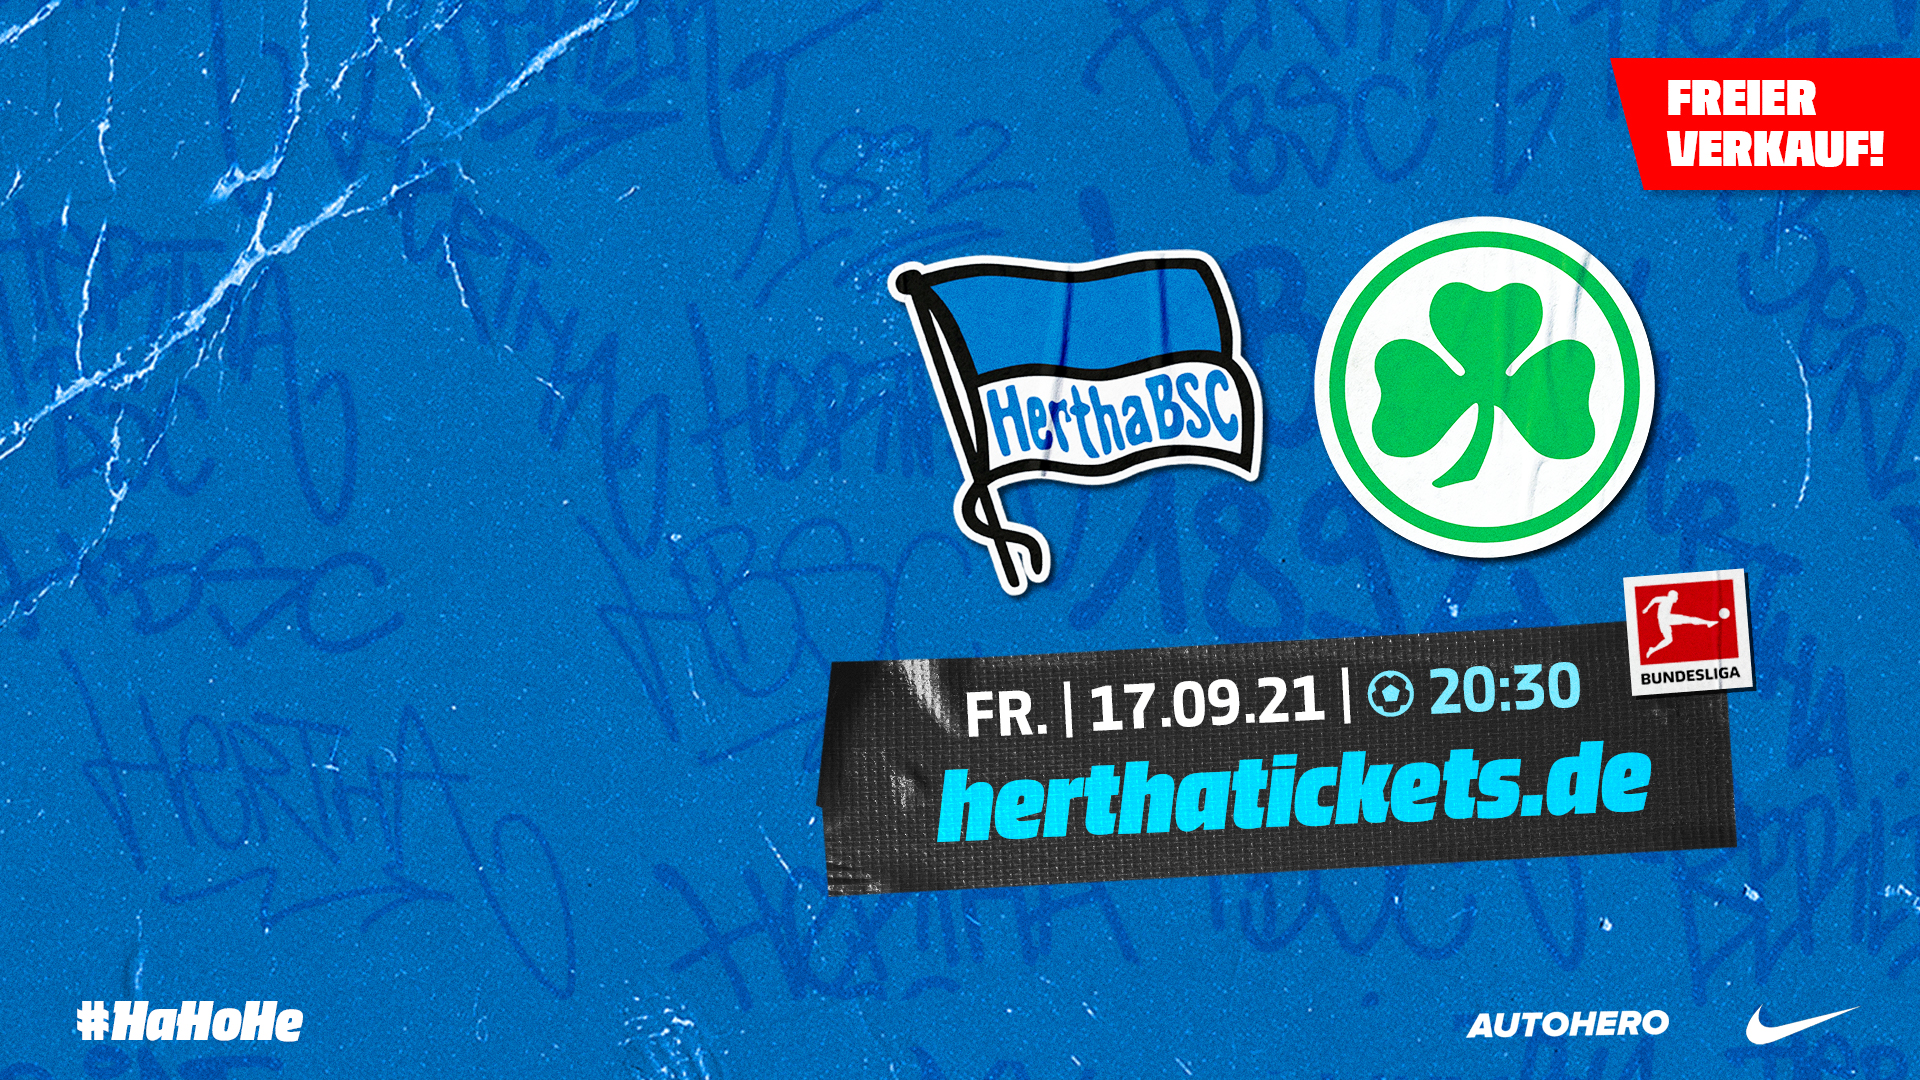 Ticketgrafik Hertha BSC gegen Reuther Fürth.